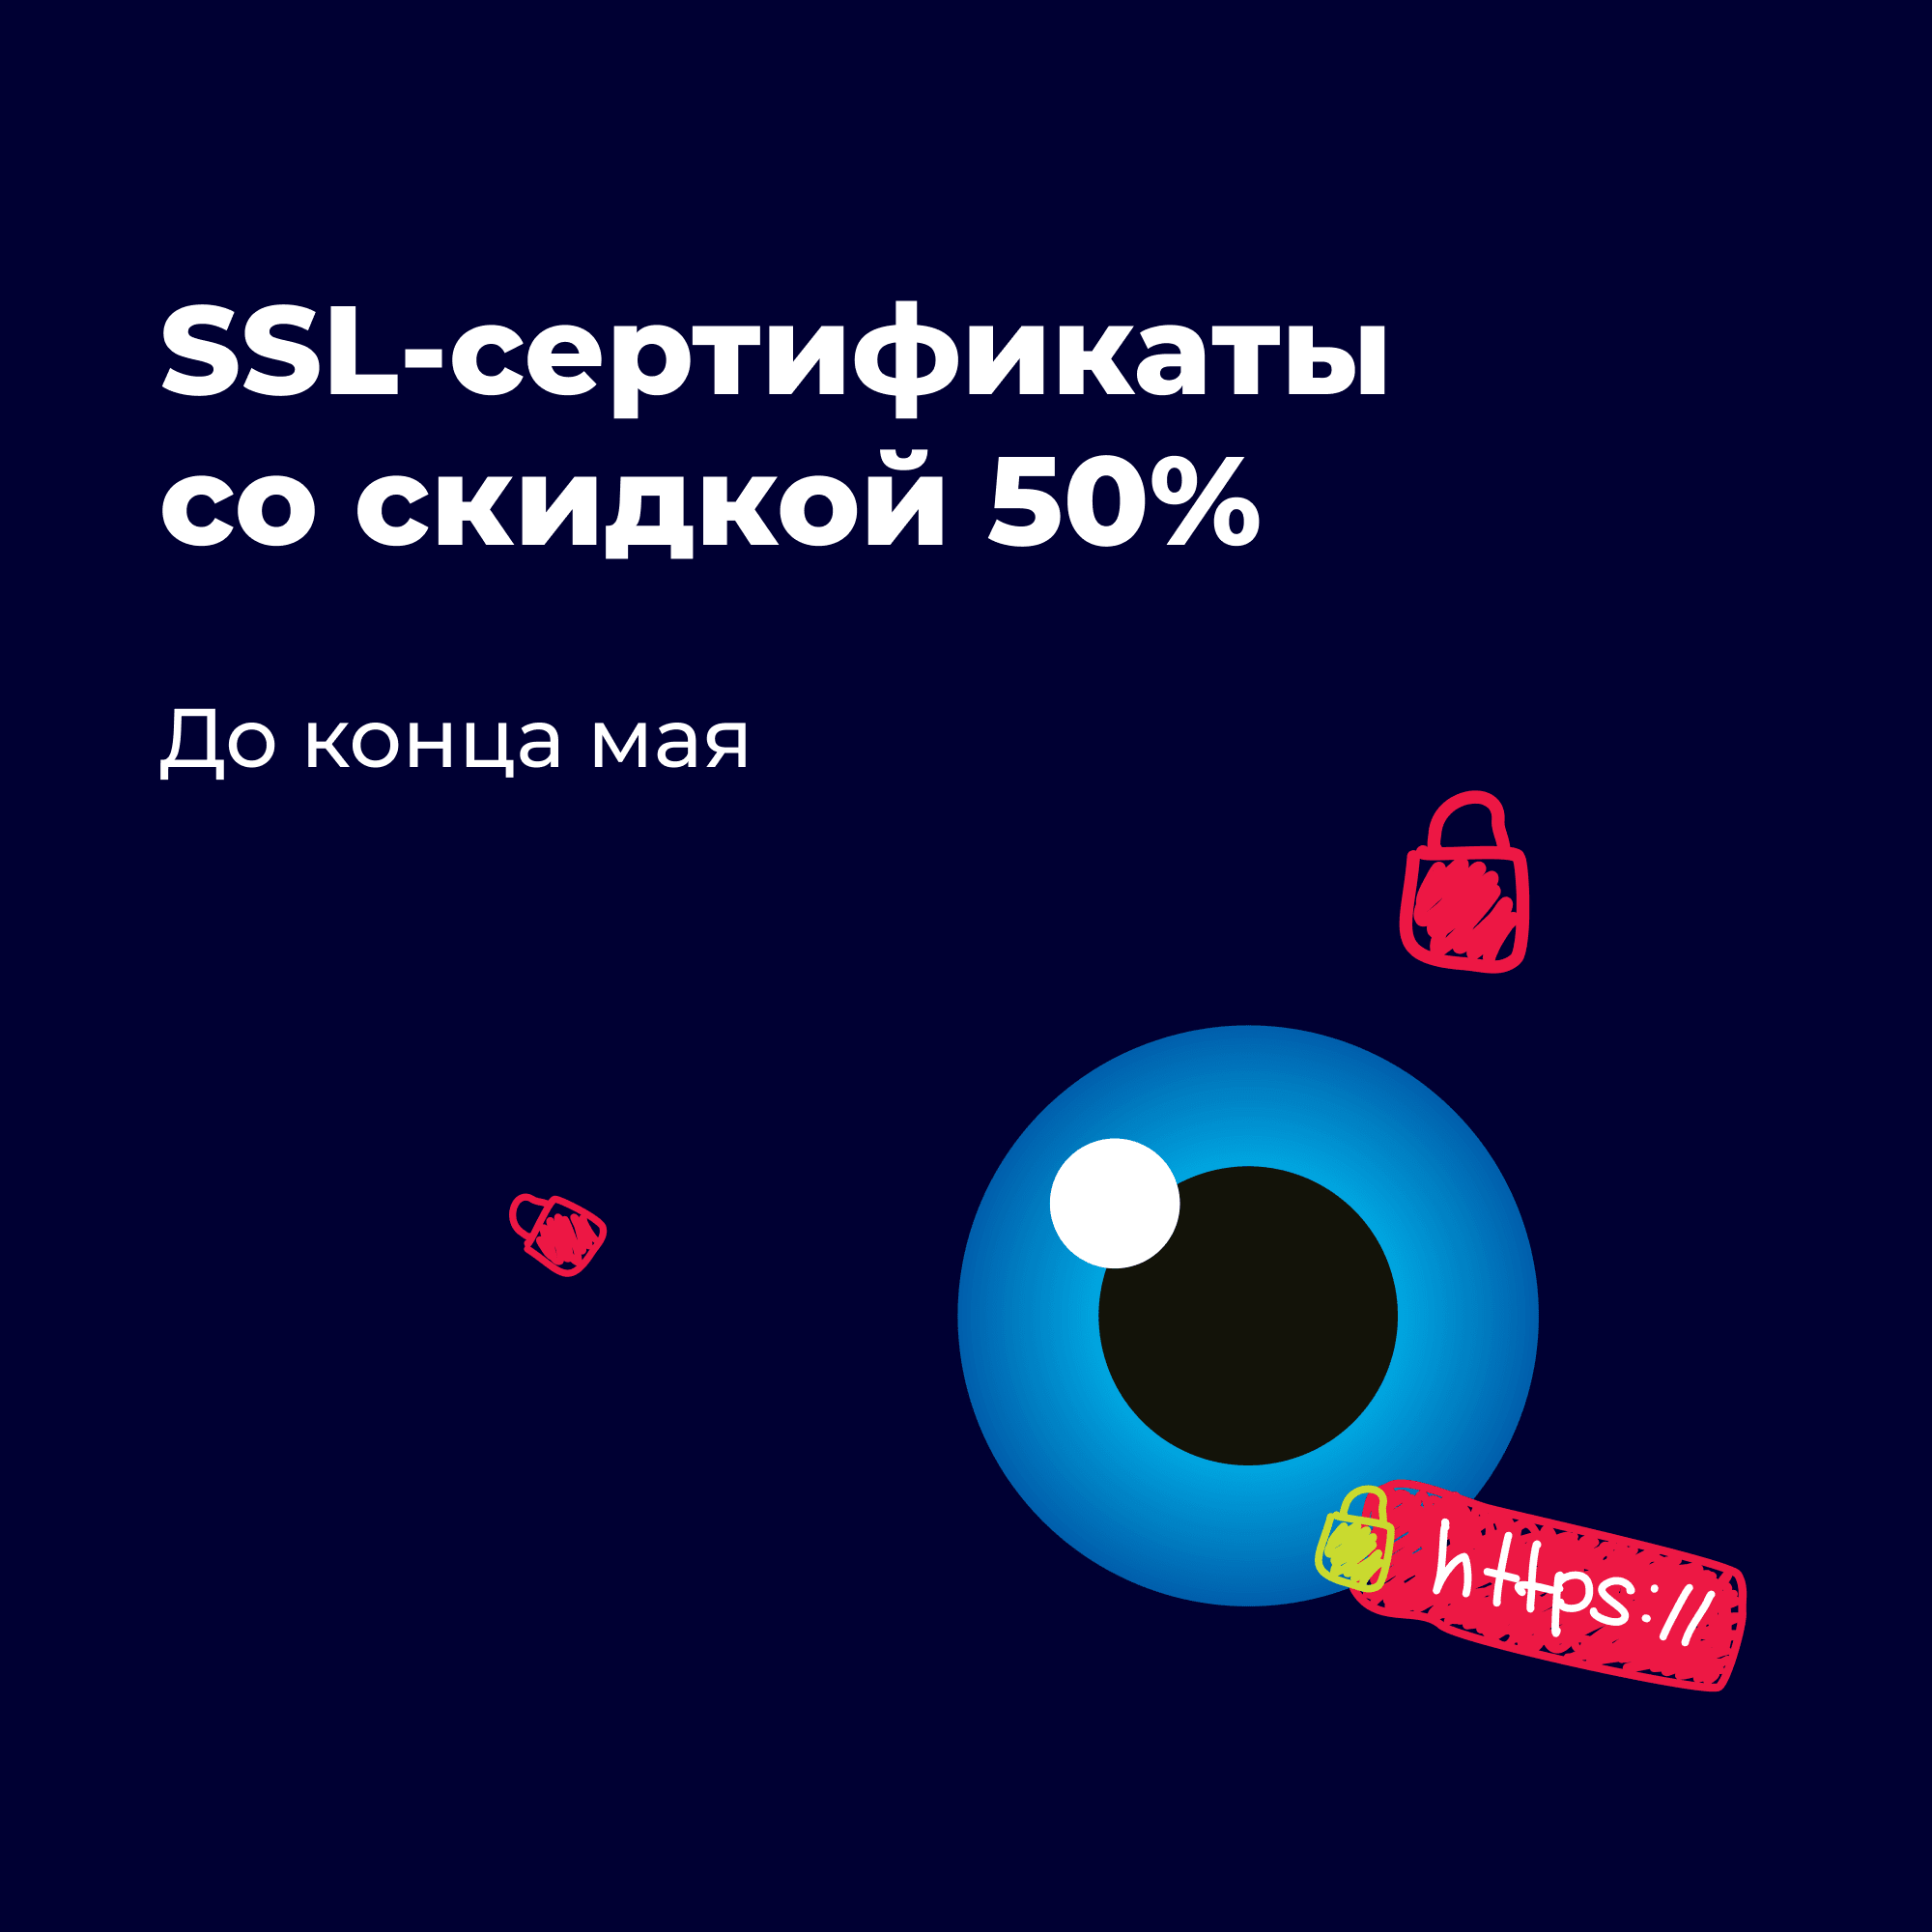 SSL-сертификат все еще можно забрать со скидкой 50% 